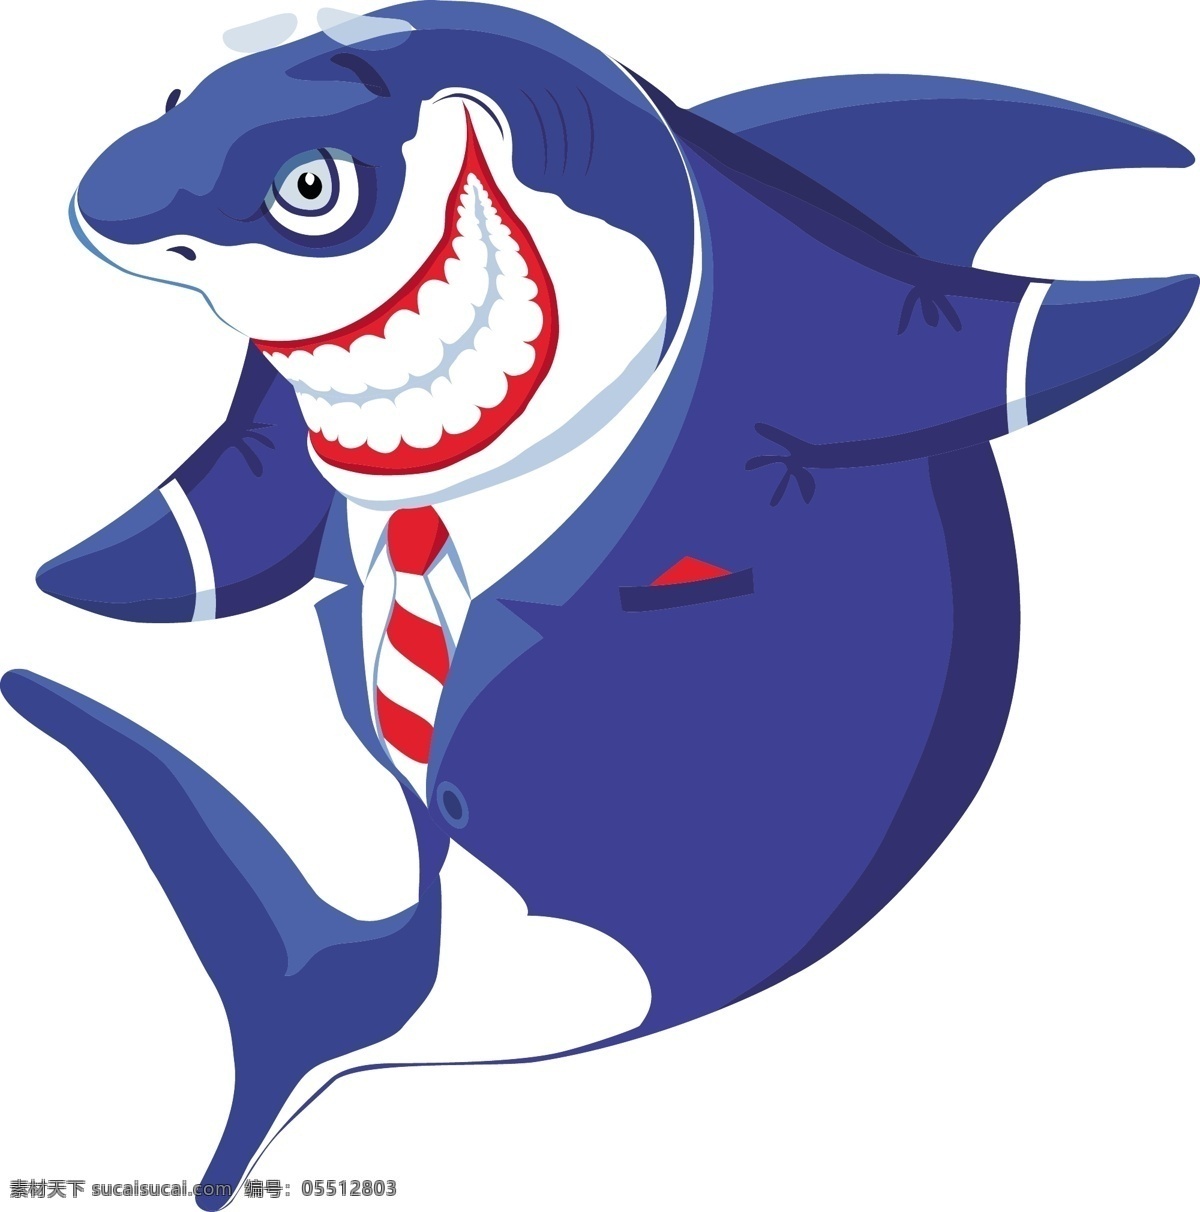 动画 海洋 海洋生物 卡通 卡通鲨鱼 蓝色 鲨鱼 生物世界 西服 矢量 模板下载 西装 boss 冷血 凶狠 残酷 虎鲨 拟人 psd源文件